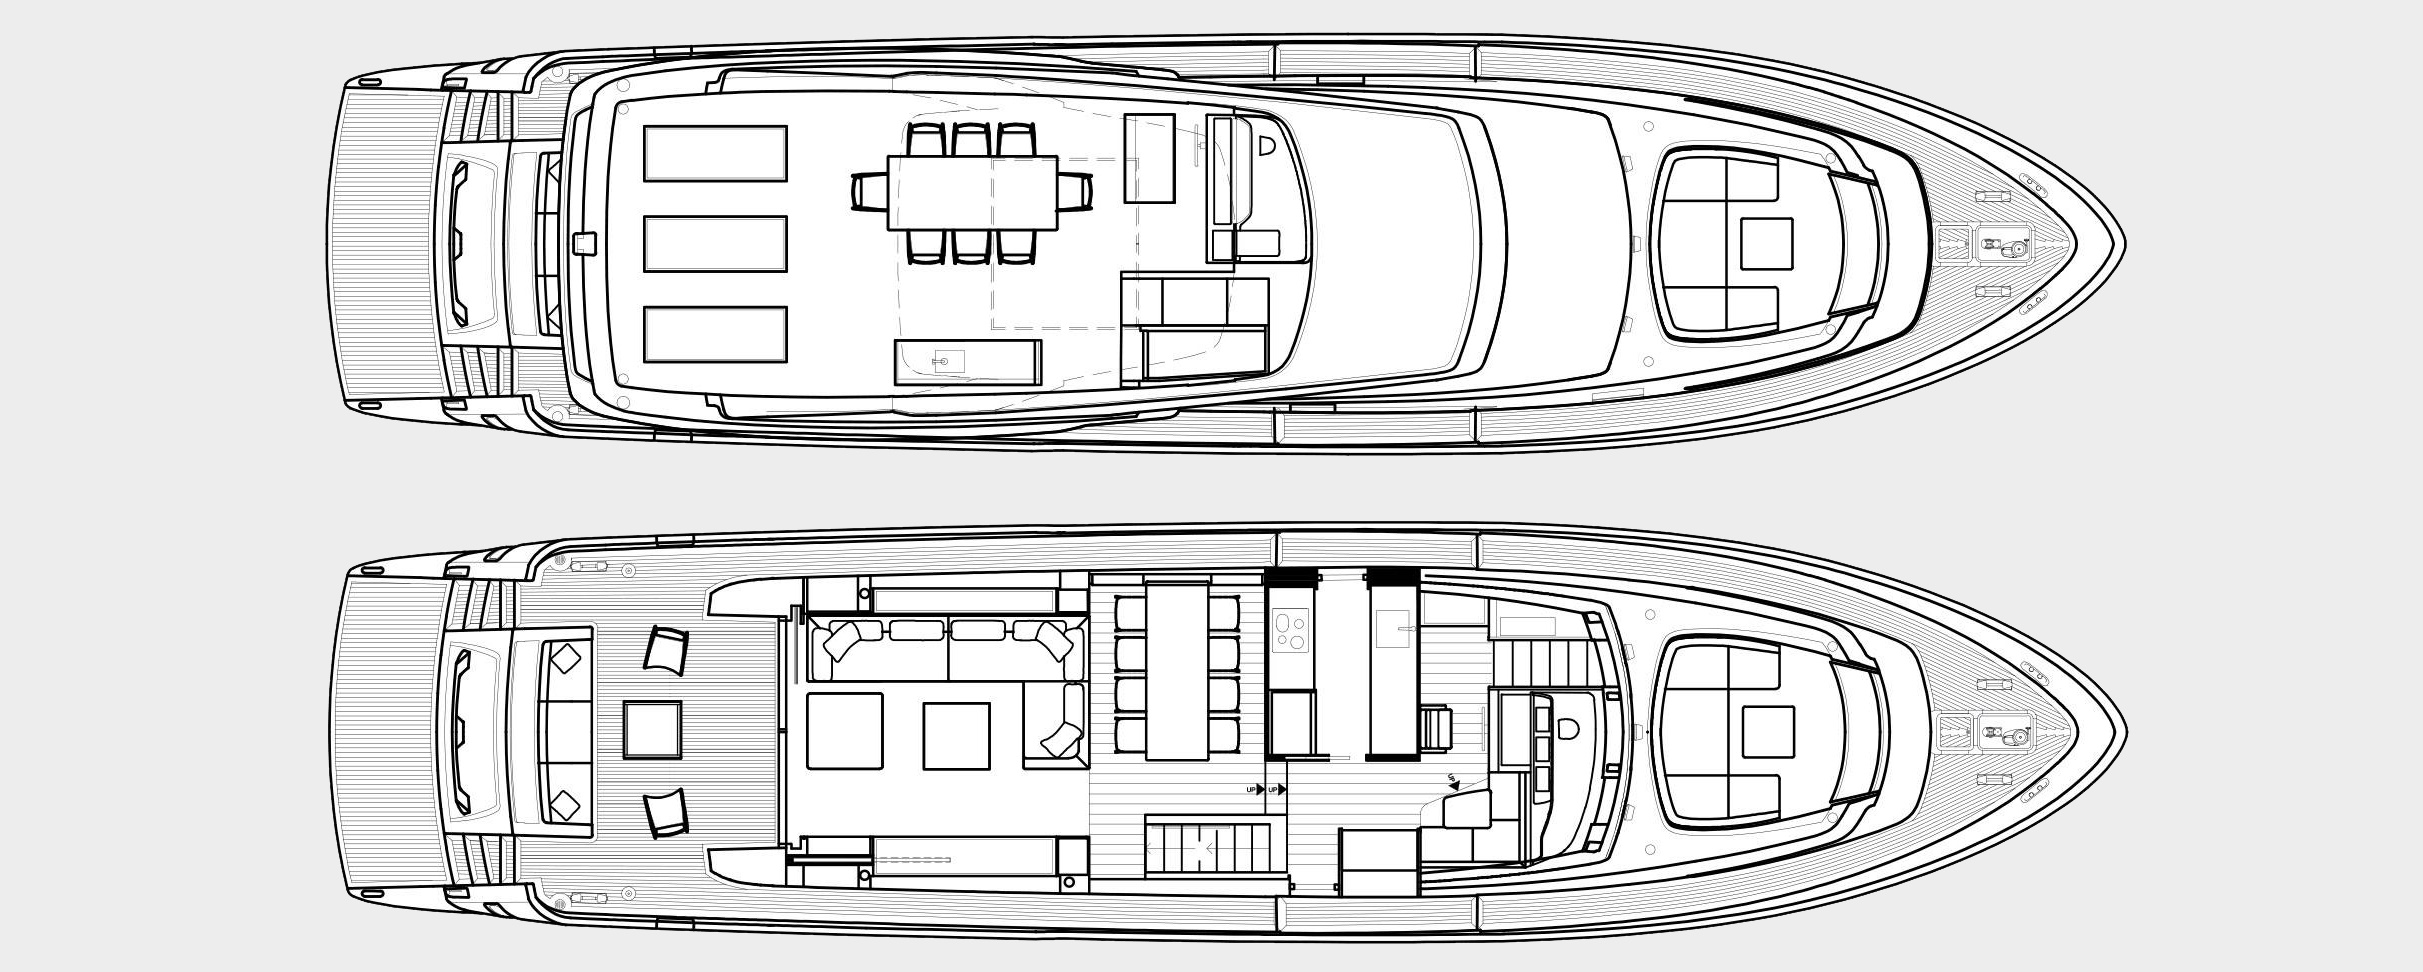 balance yacht charter layout